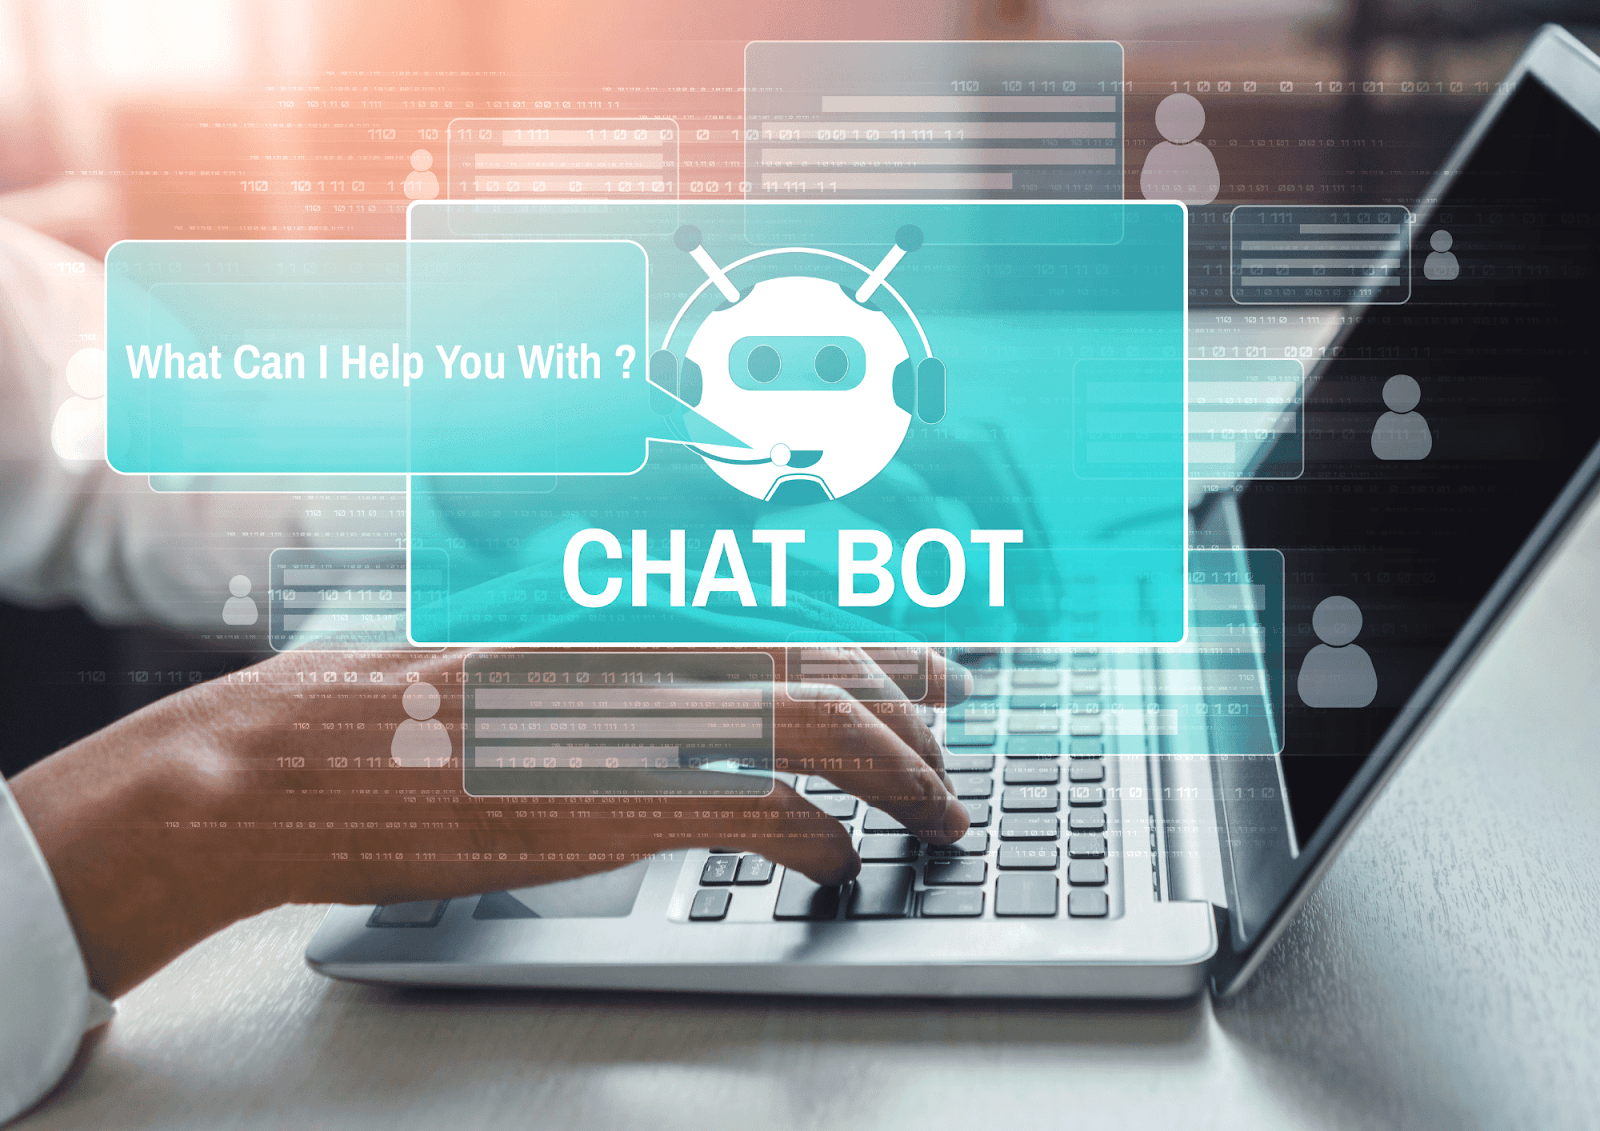 Intelligente Chatbots sind eine Möglichkeit, mit kognitiven Systemen die Kundenbindung zu fördern